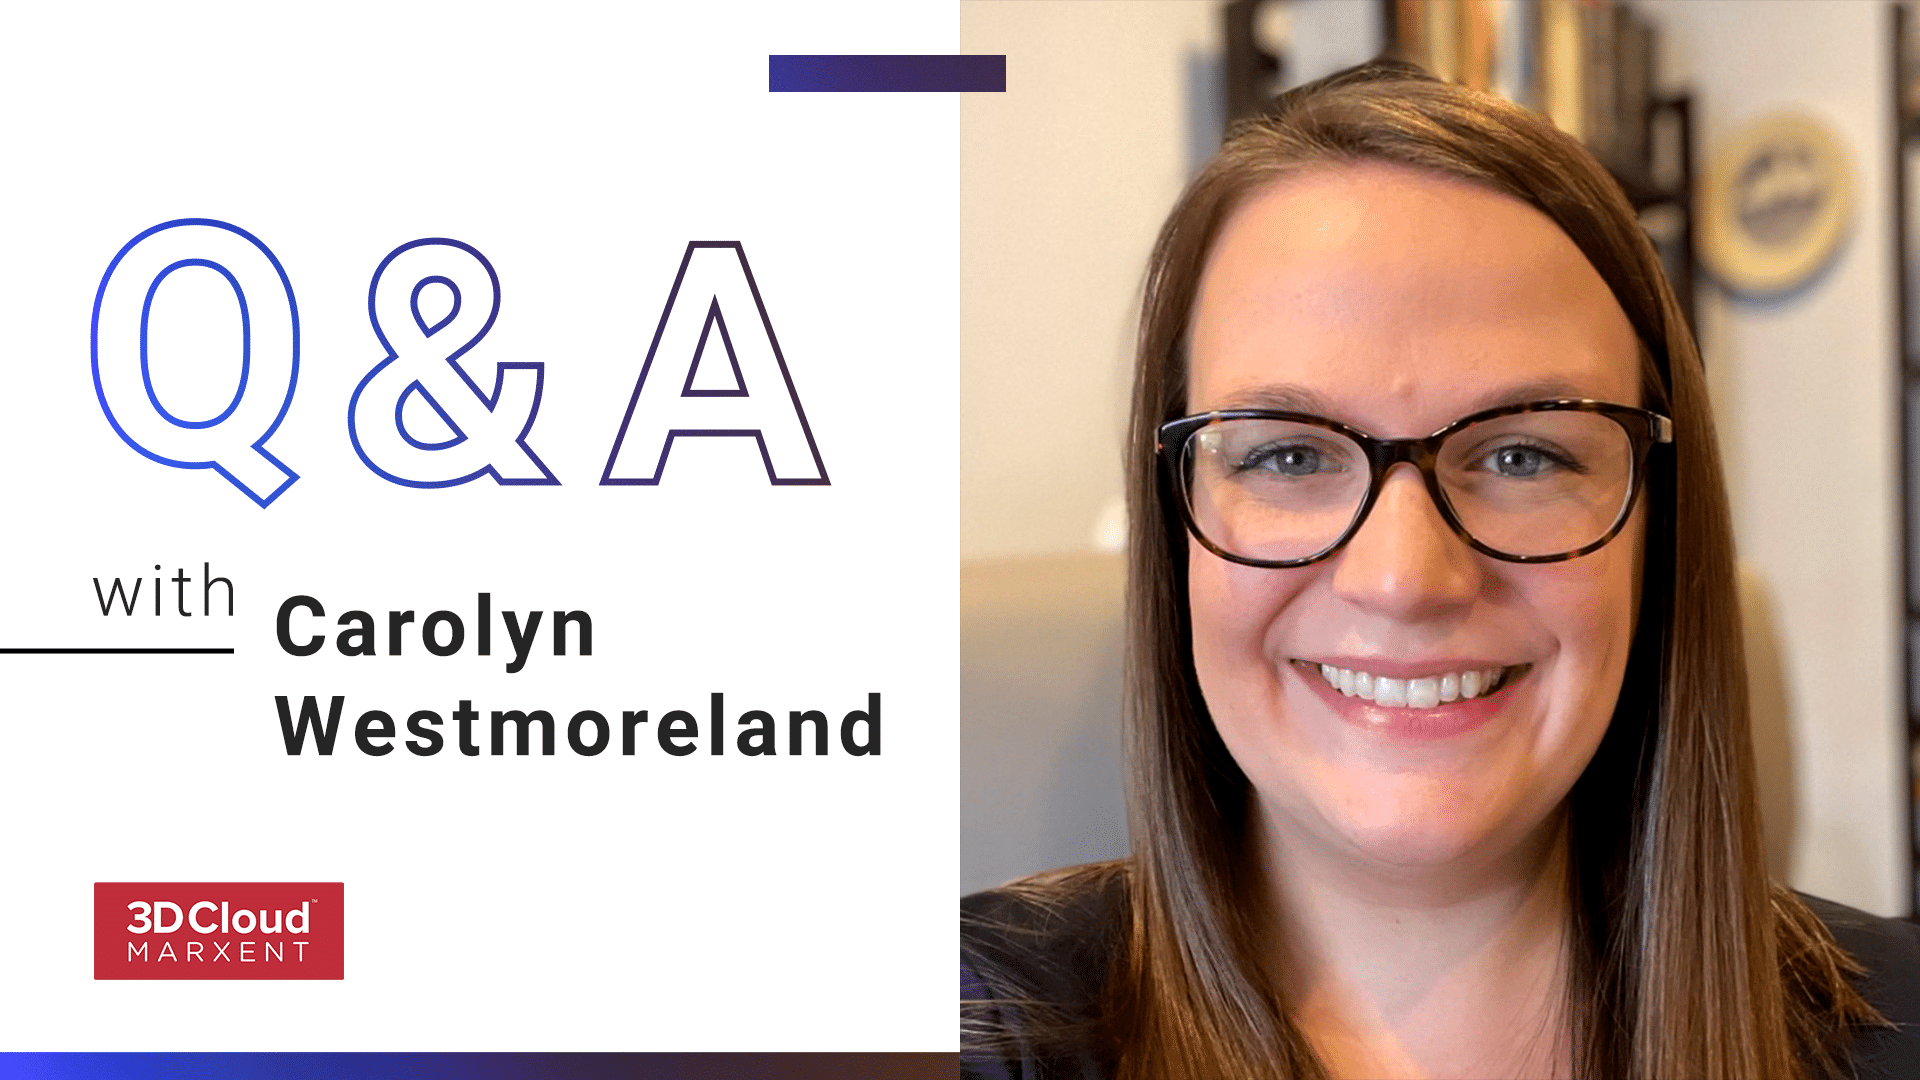 Employee Q&A with Carolyn Westmoreland